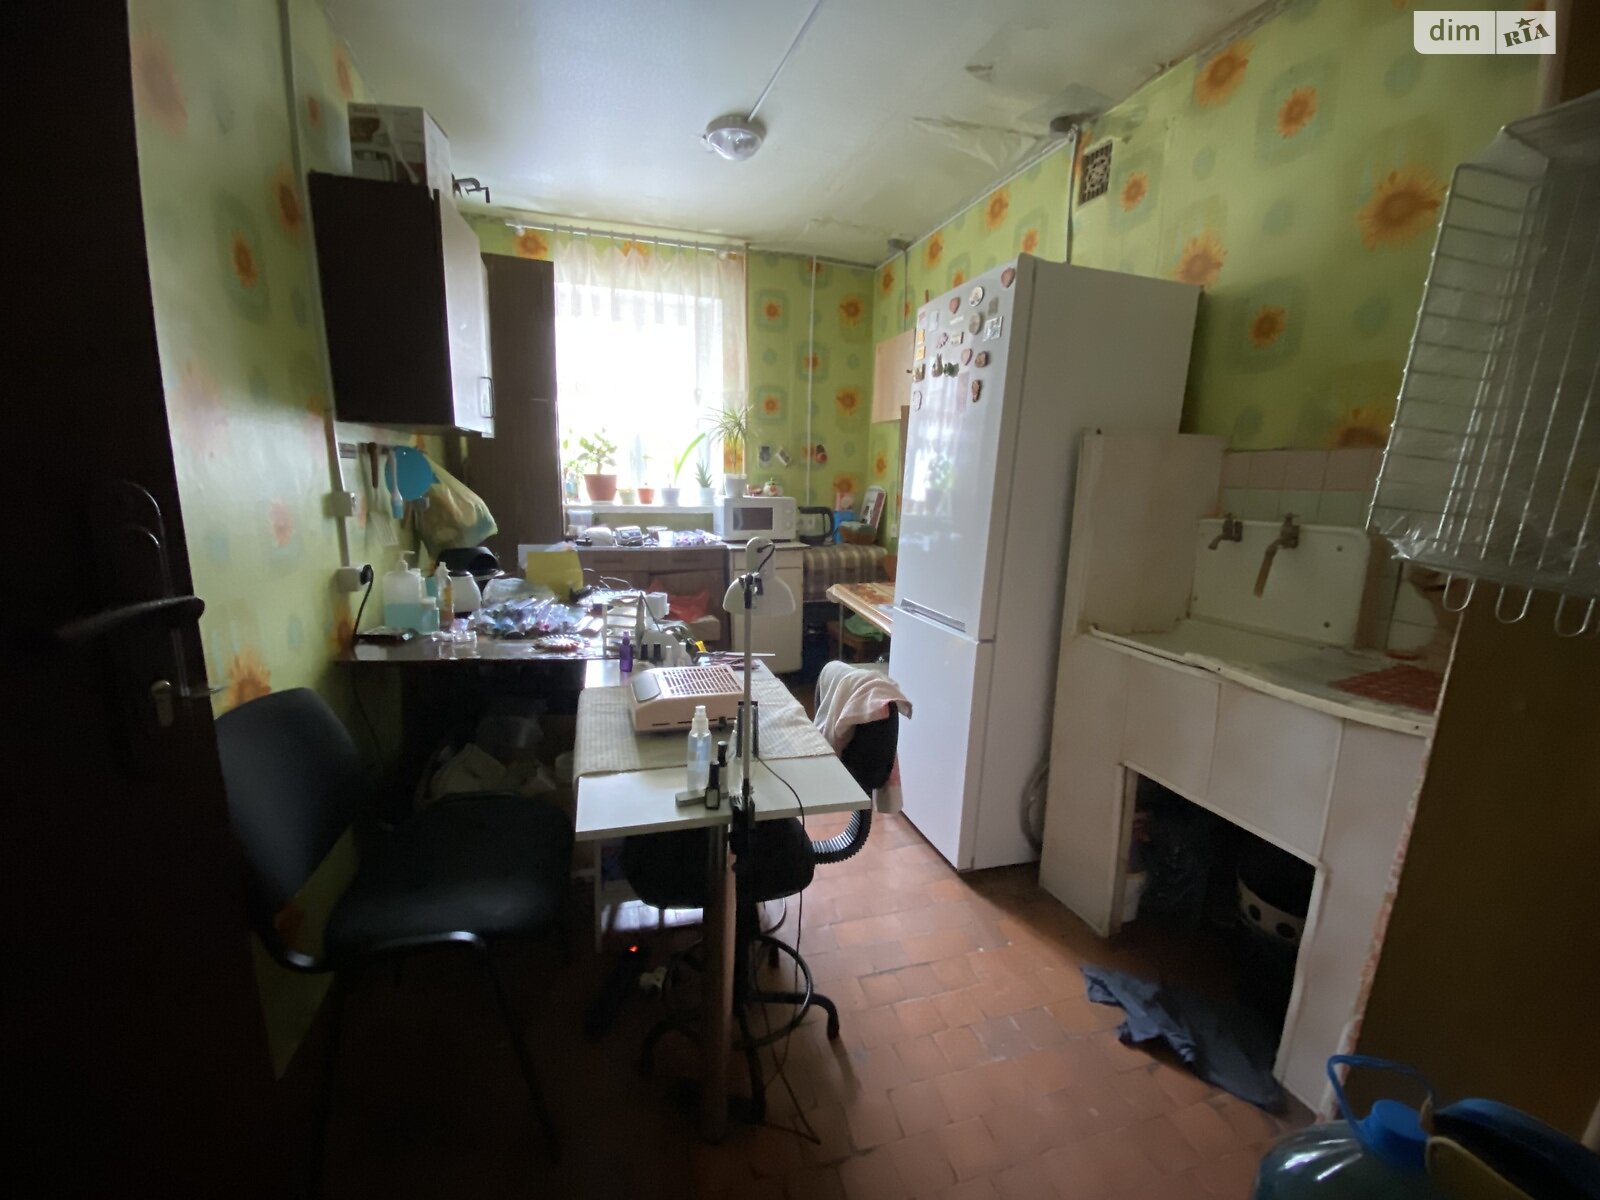 Кімната в Харкові на вул. Маршала Батицького 20А, кв. 338 в районі Салтівка на продаж фото 1